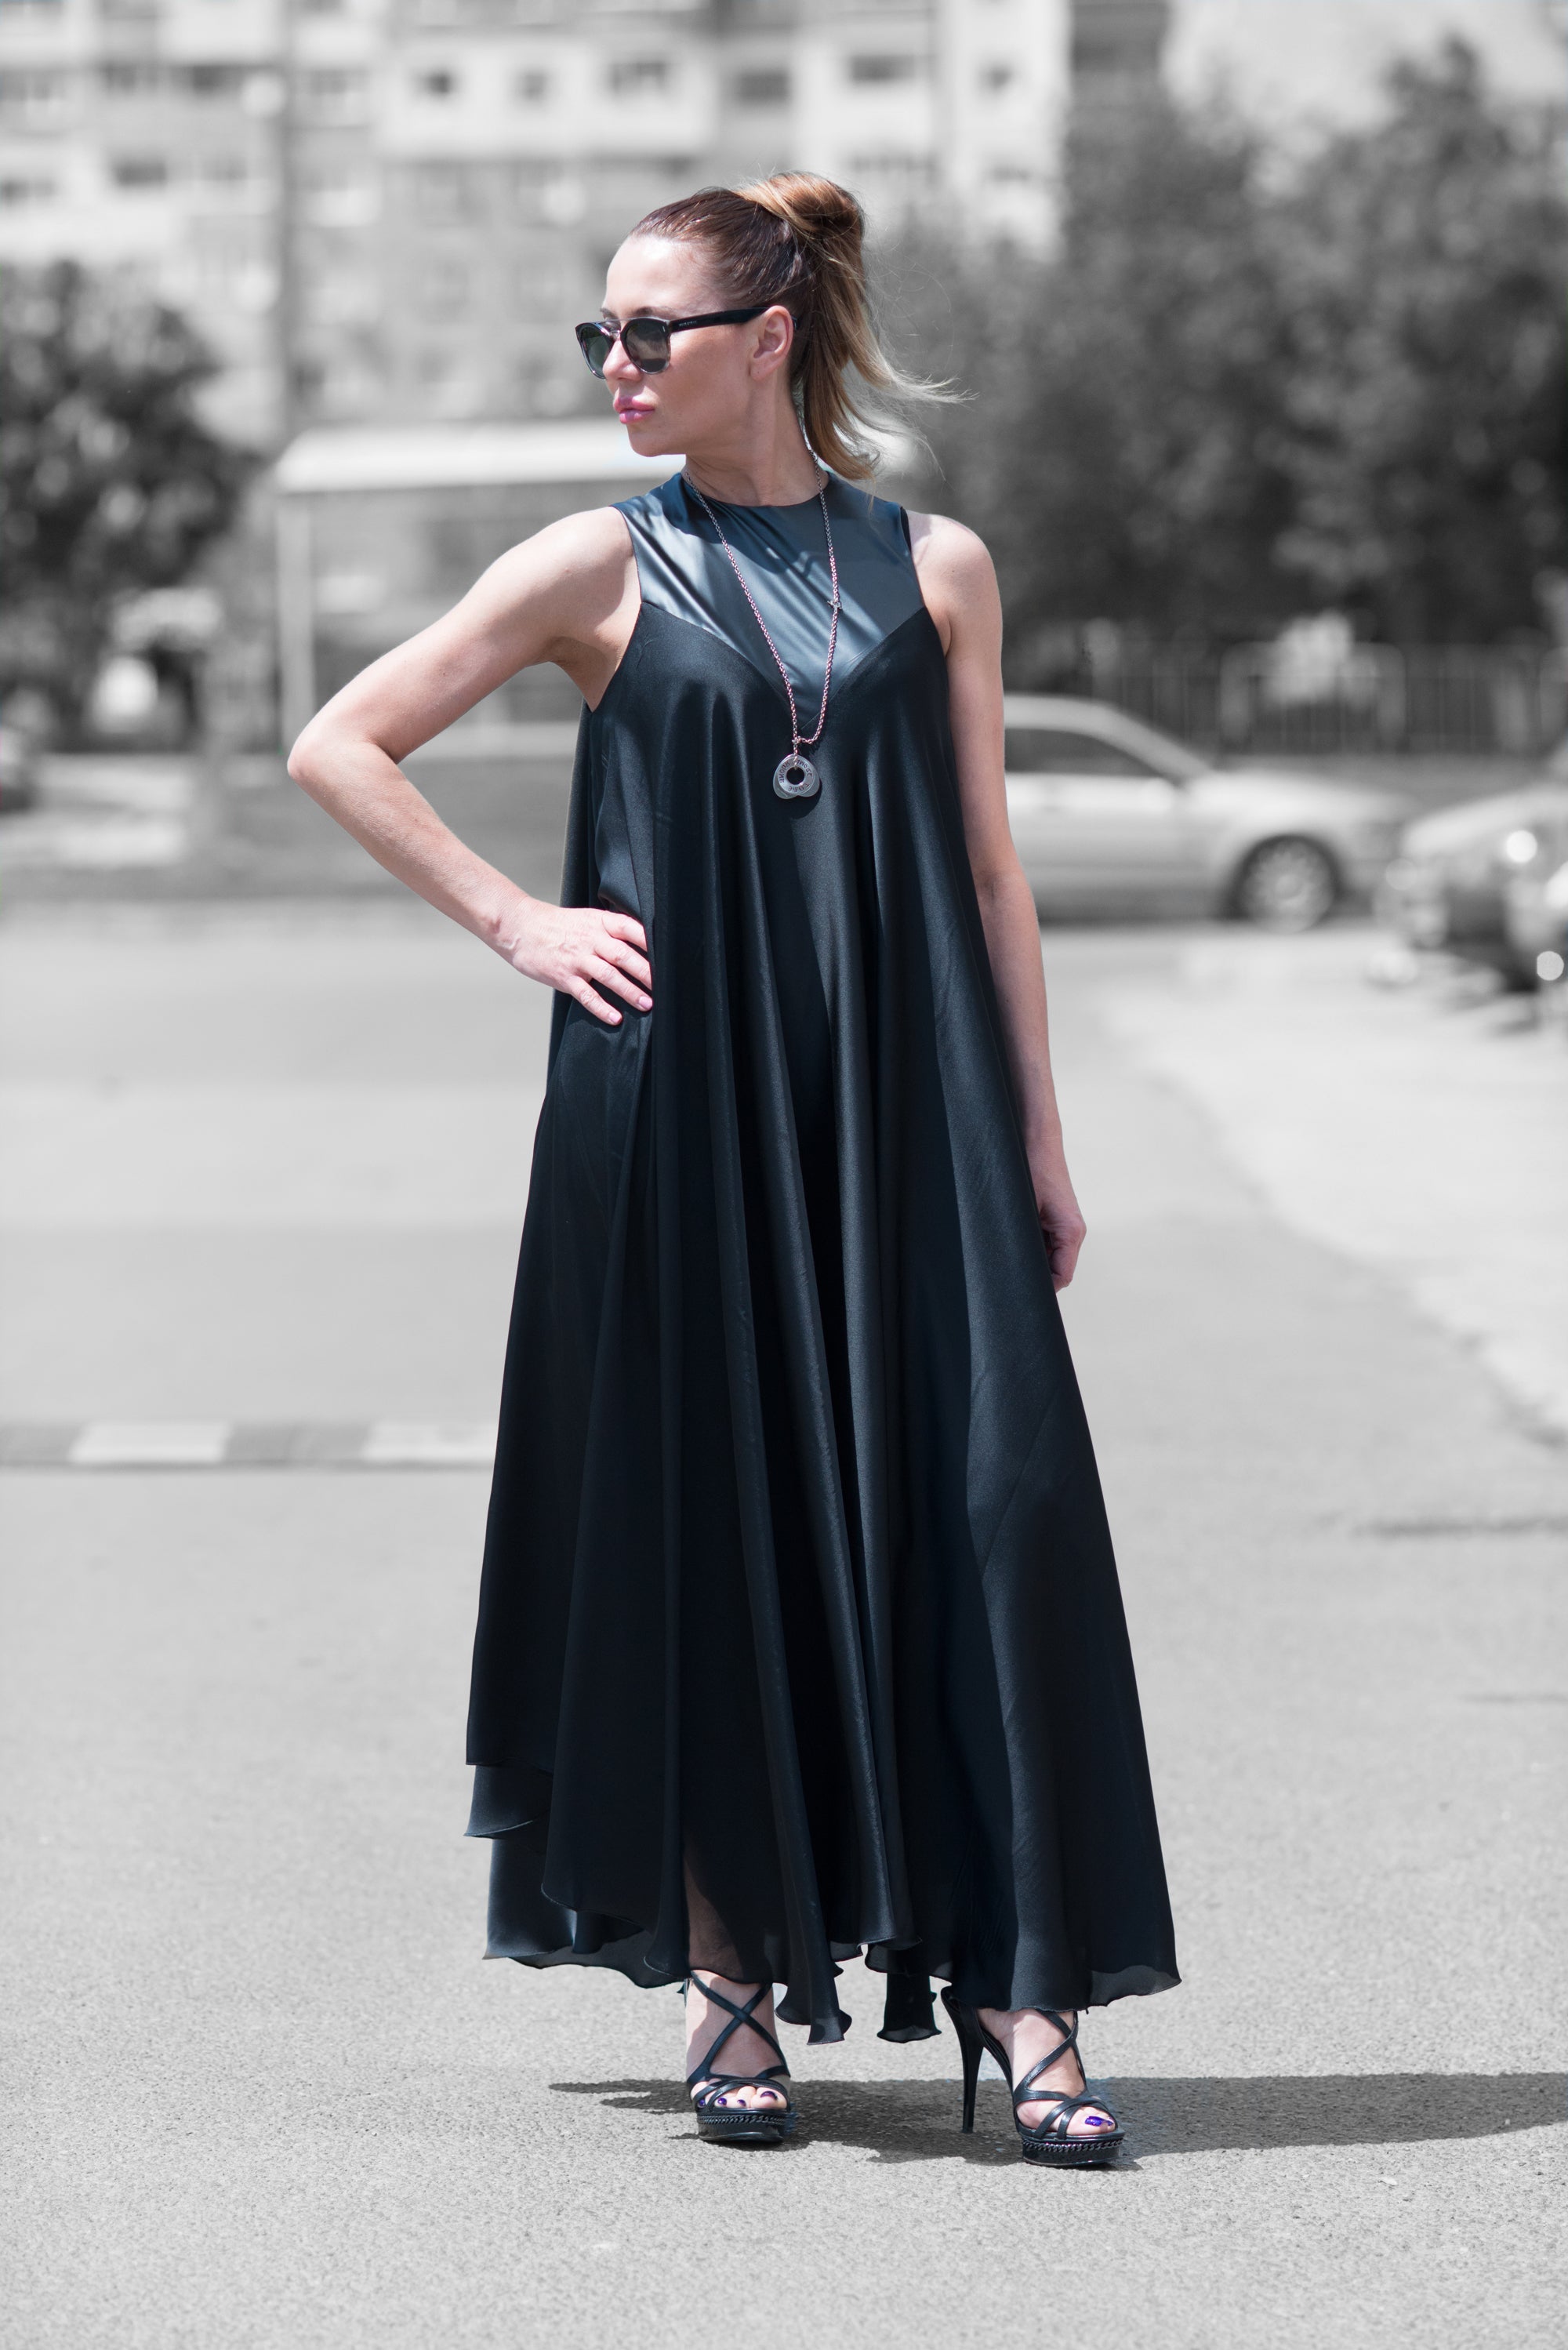 Black Summer Evening Dress by EUG Fashion